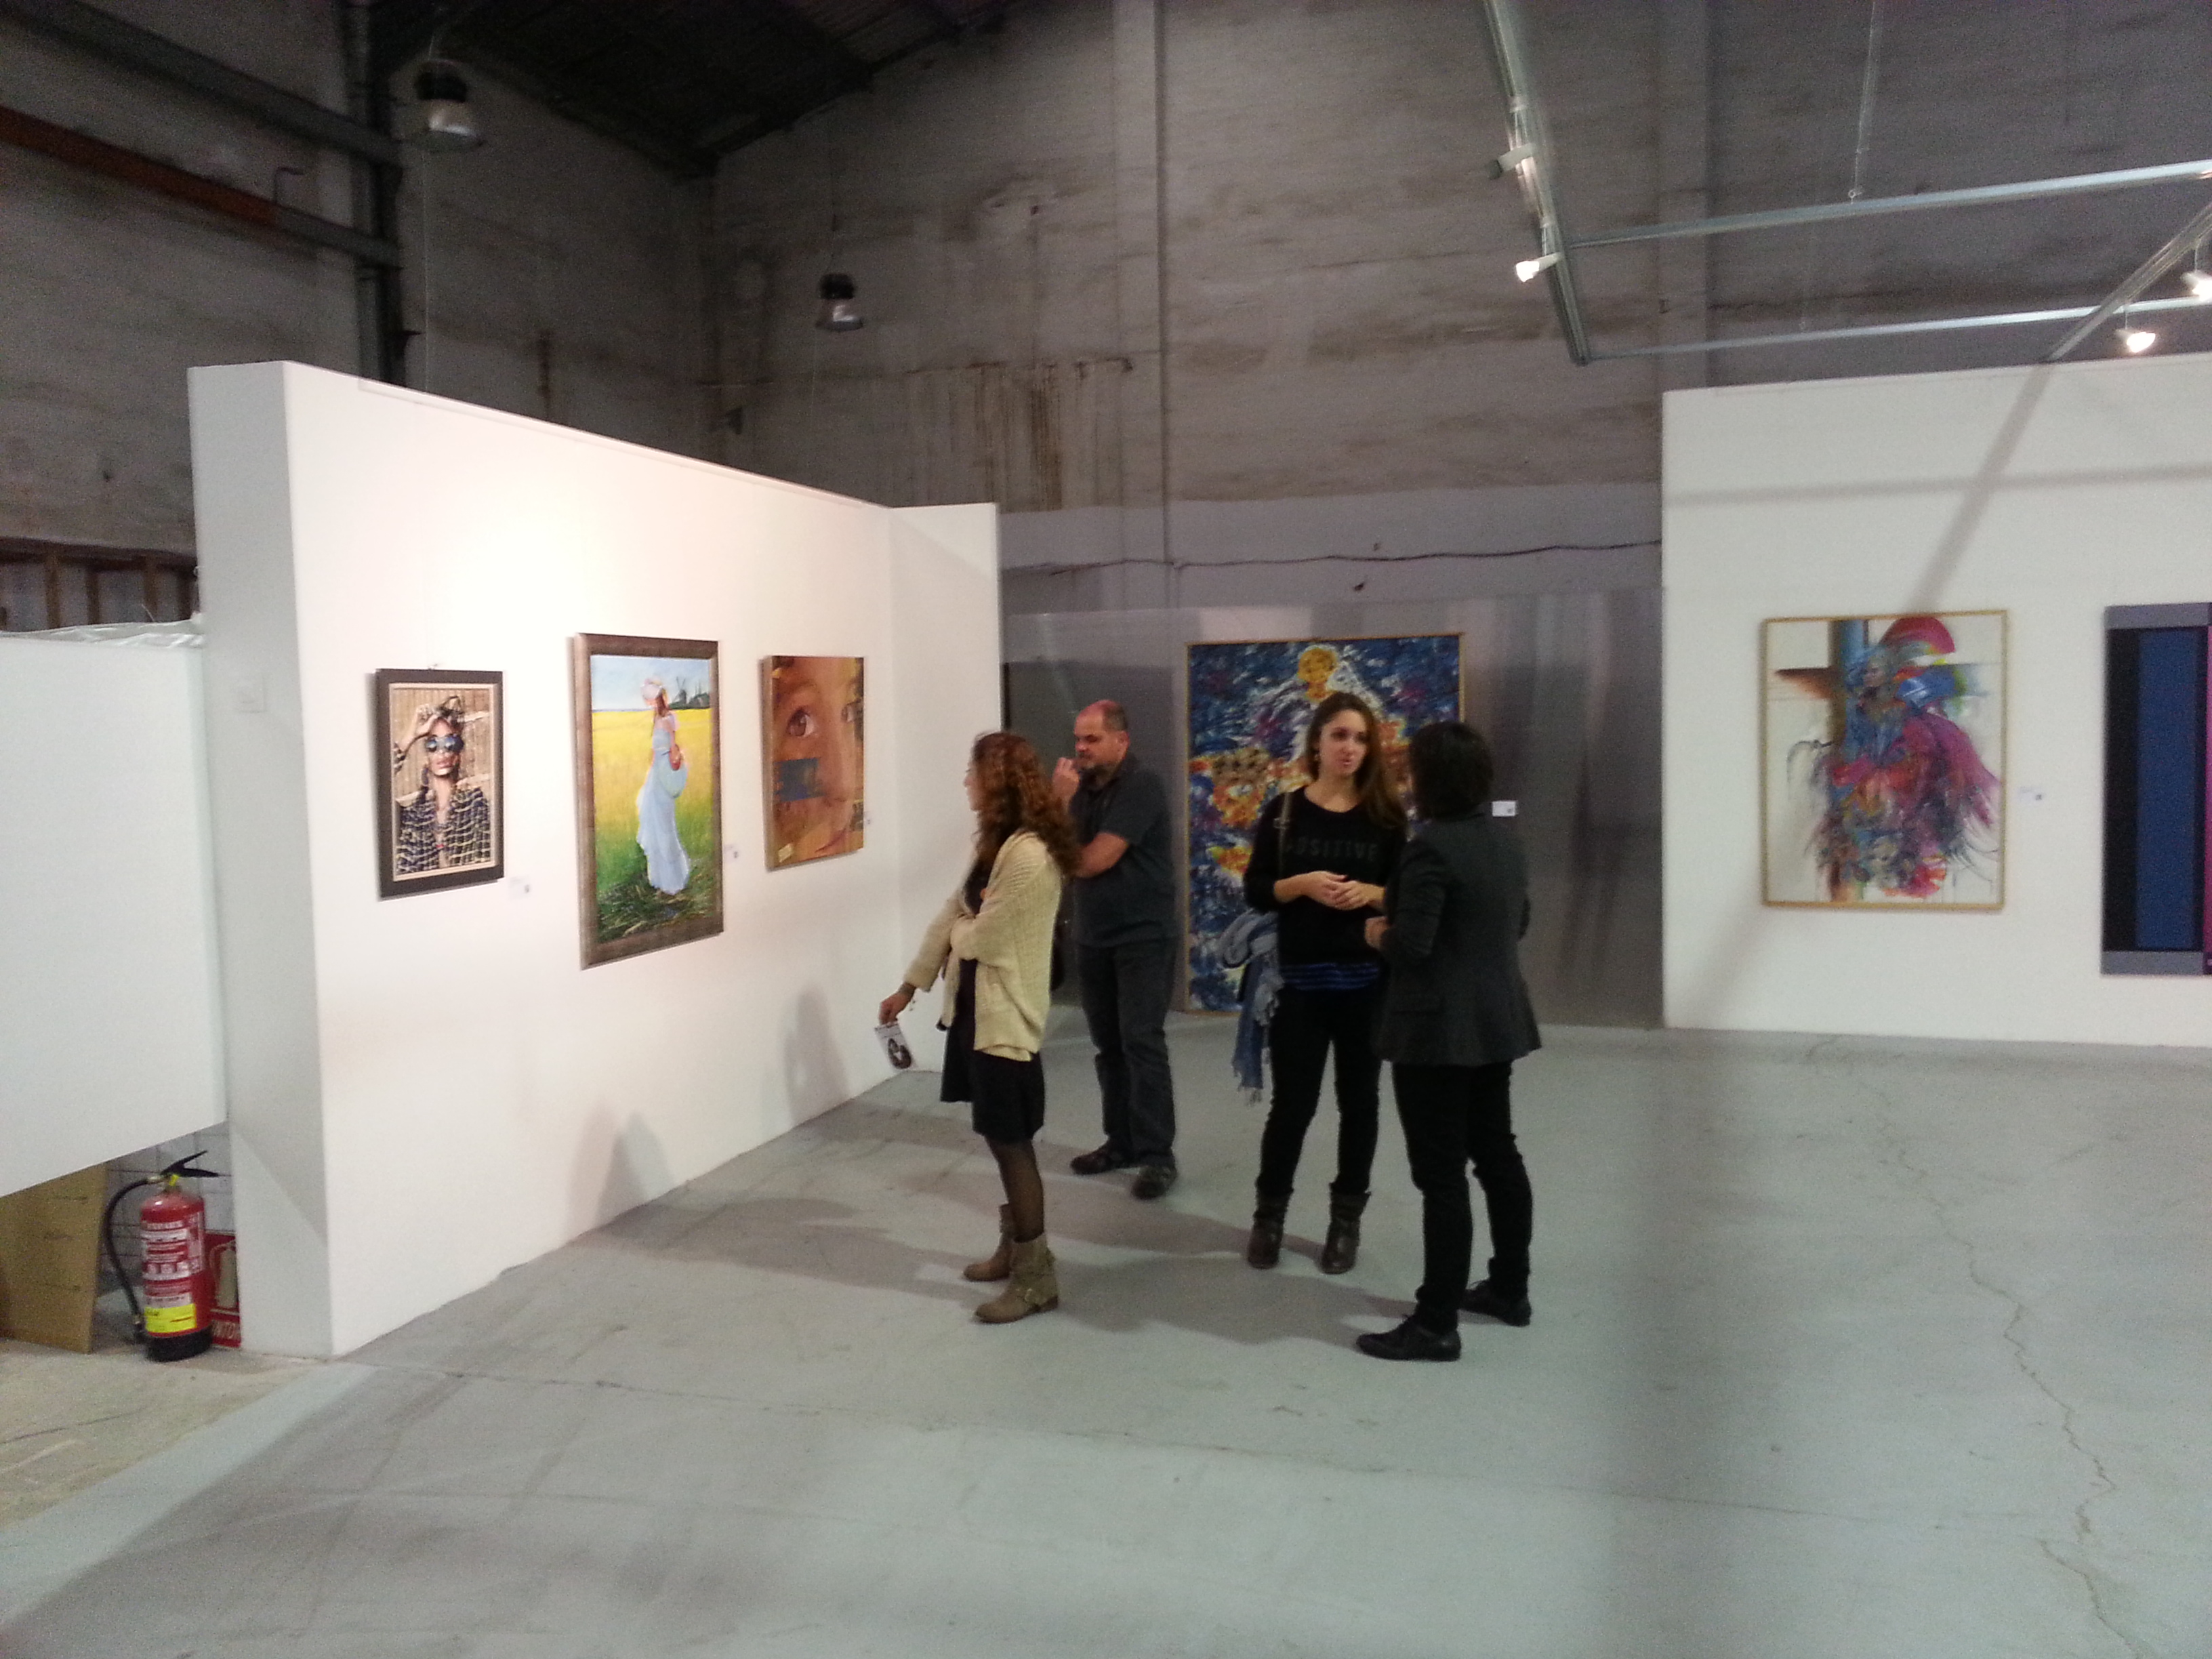 Muestra Artelista Offline 2015